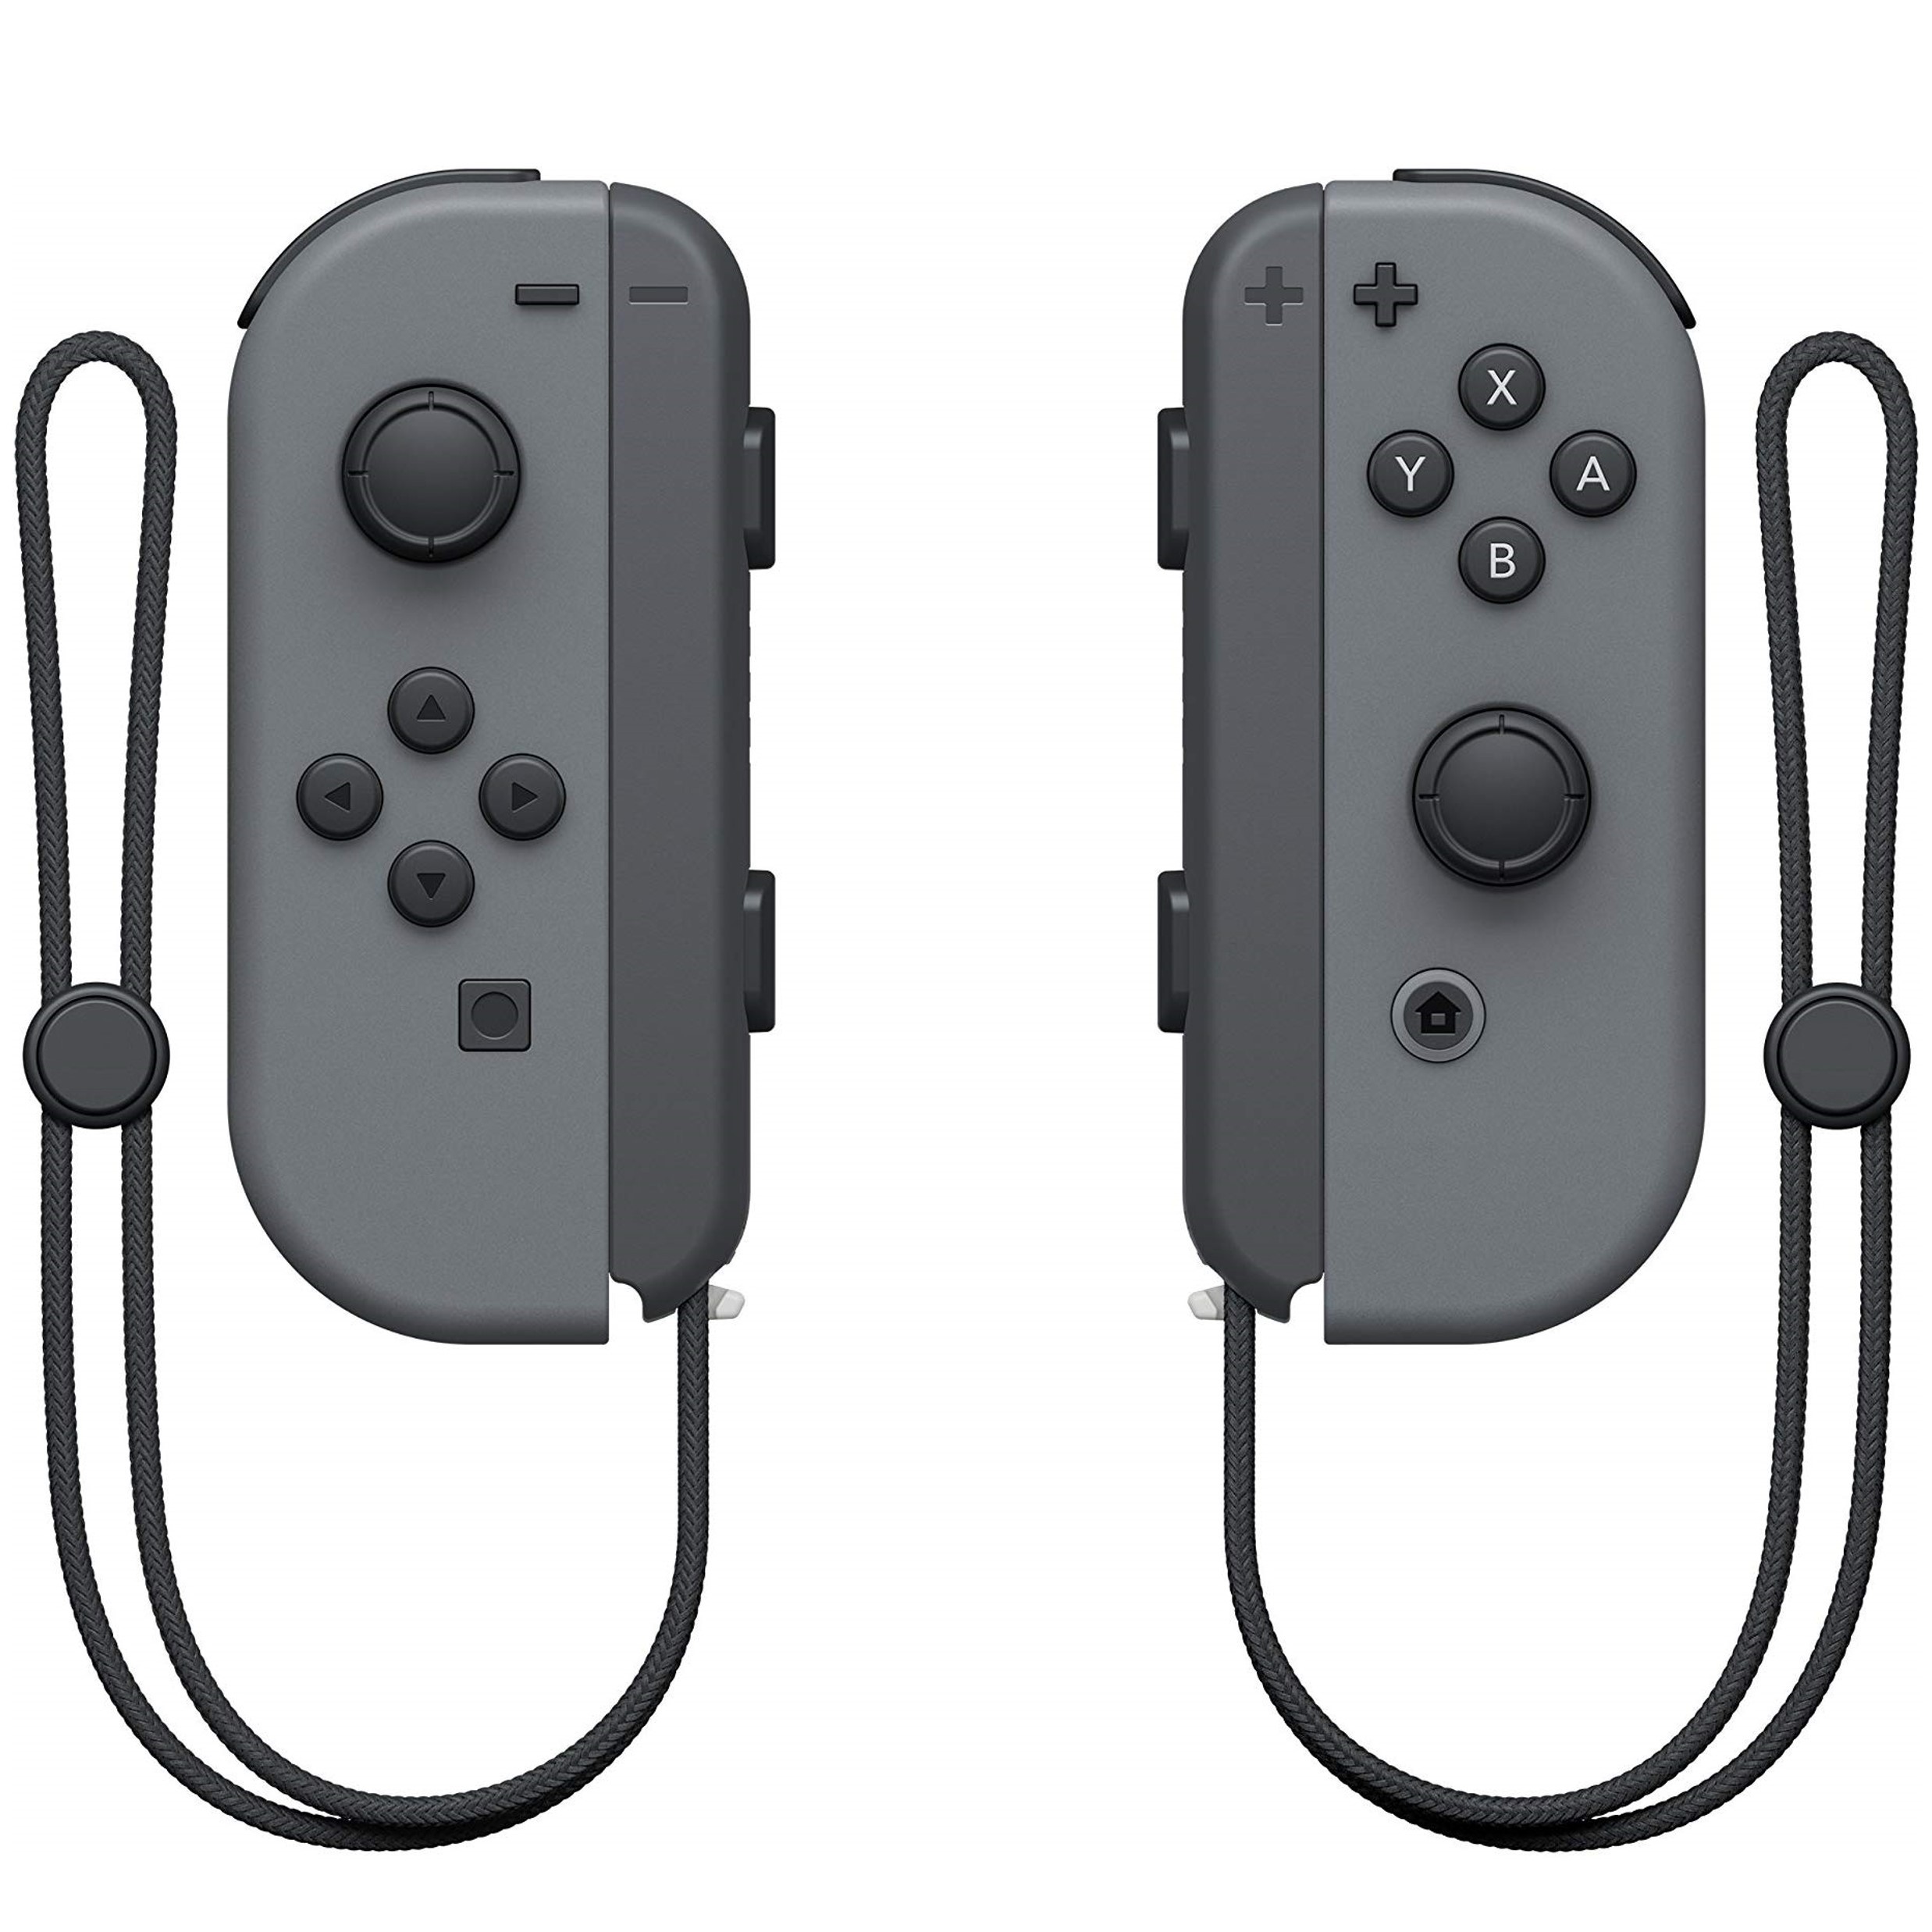 Nieuwe Wireless Joy-Con Controllers (L & R) voor de Nintendo Switch - Grey - Nintendo Switch Hardware